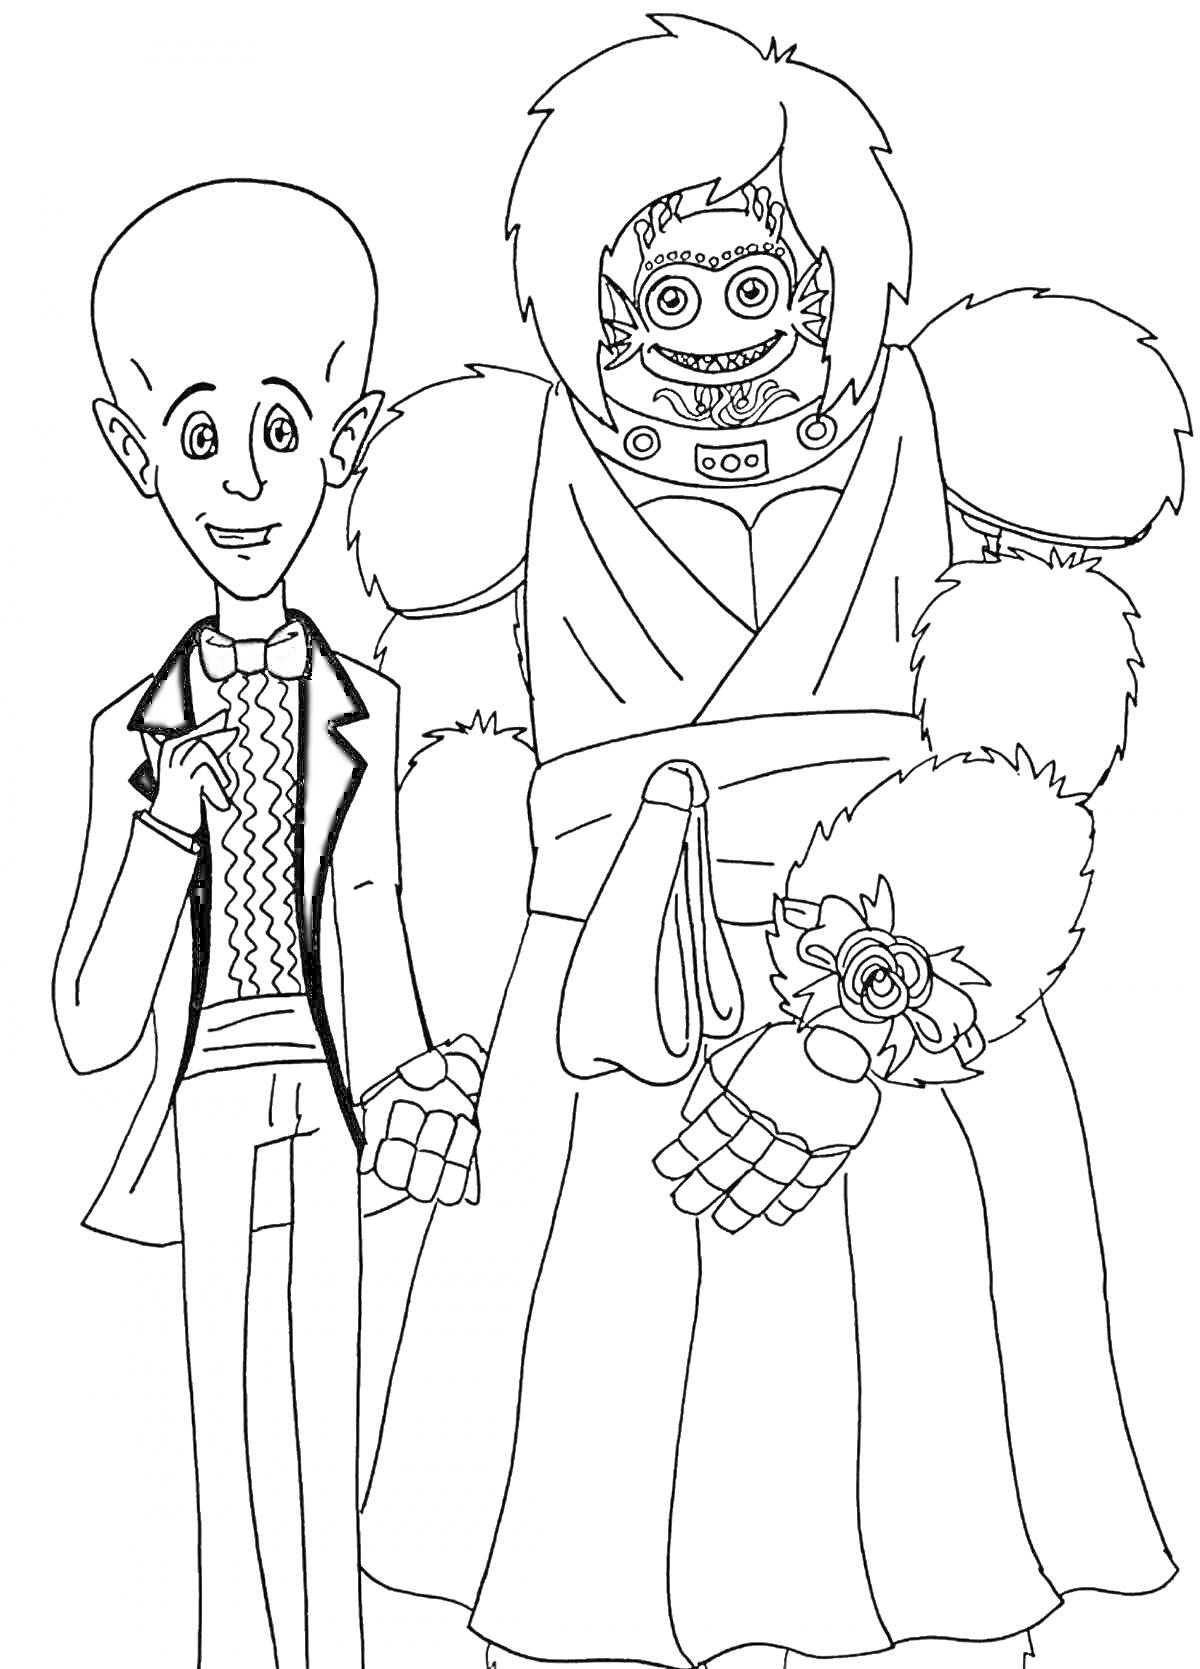 Человек в смокинге и робот в платье с цветами